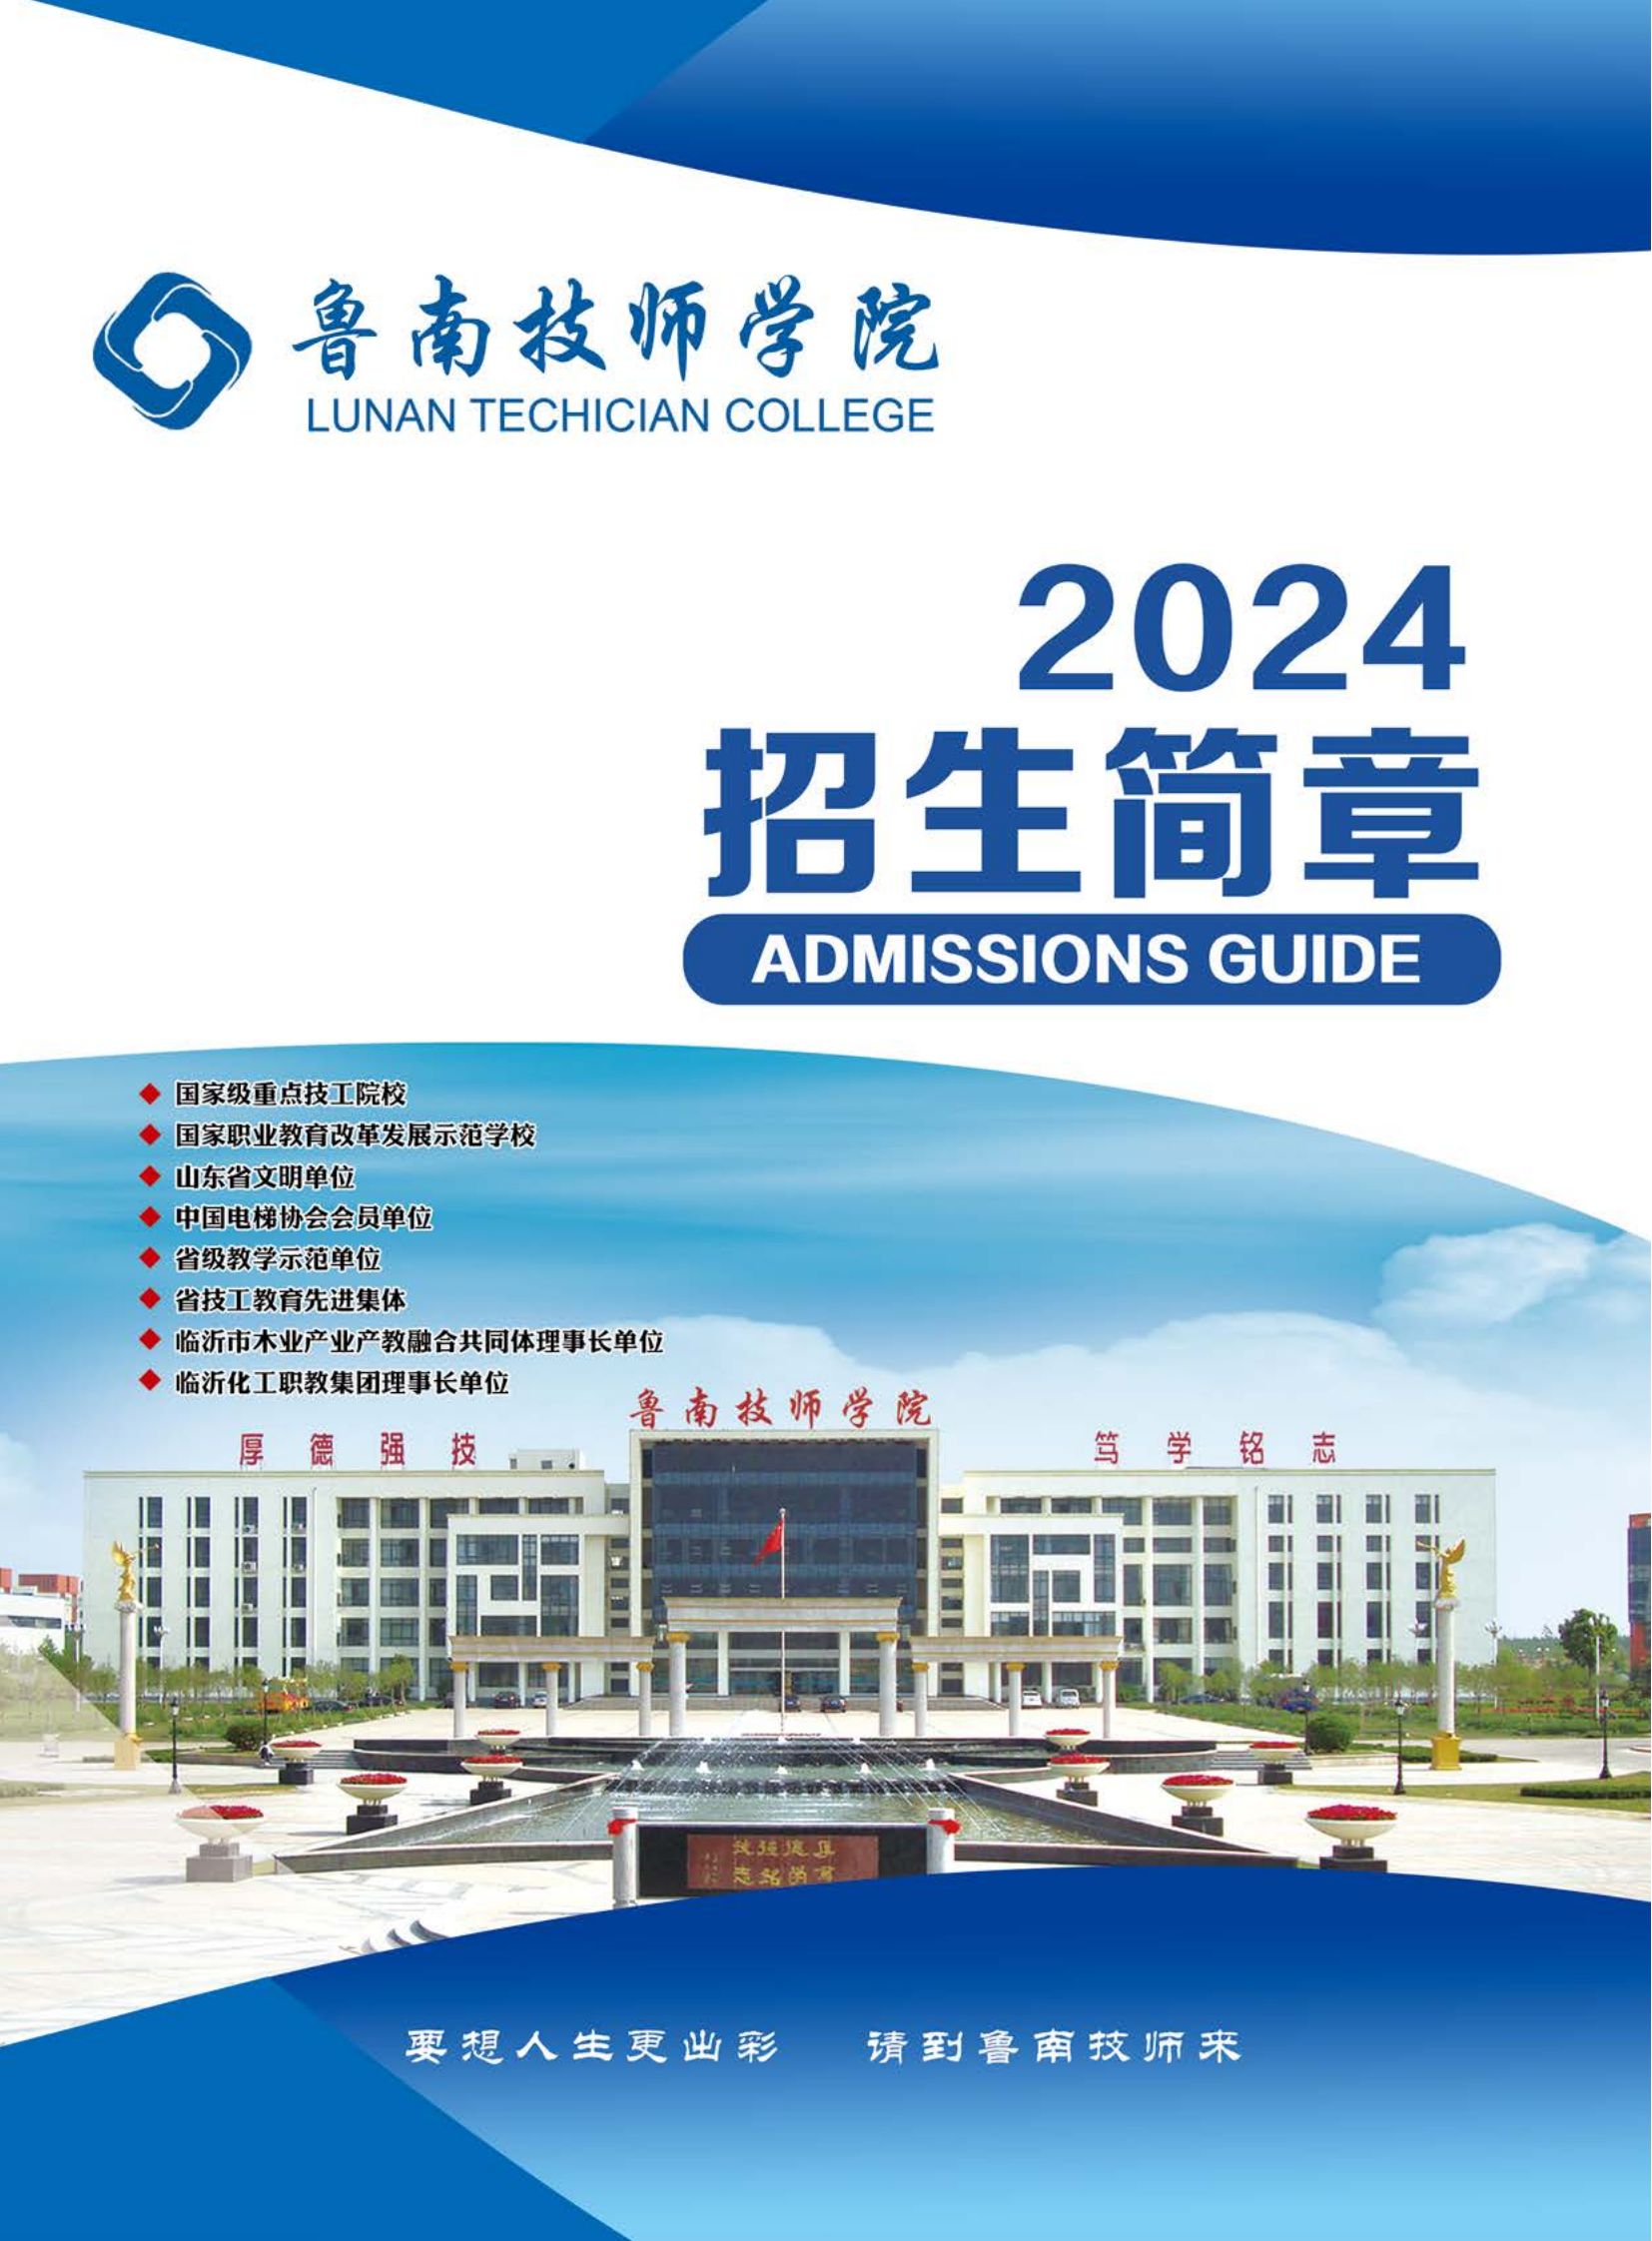 2024鲁南技师学院大简章（蓝色）_00.jpg